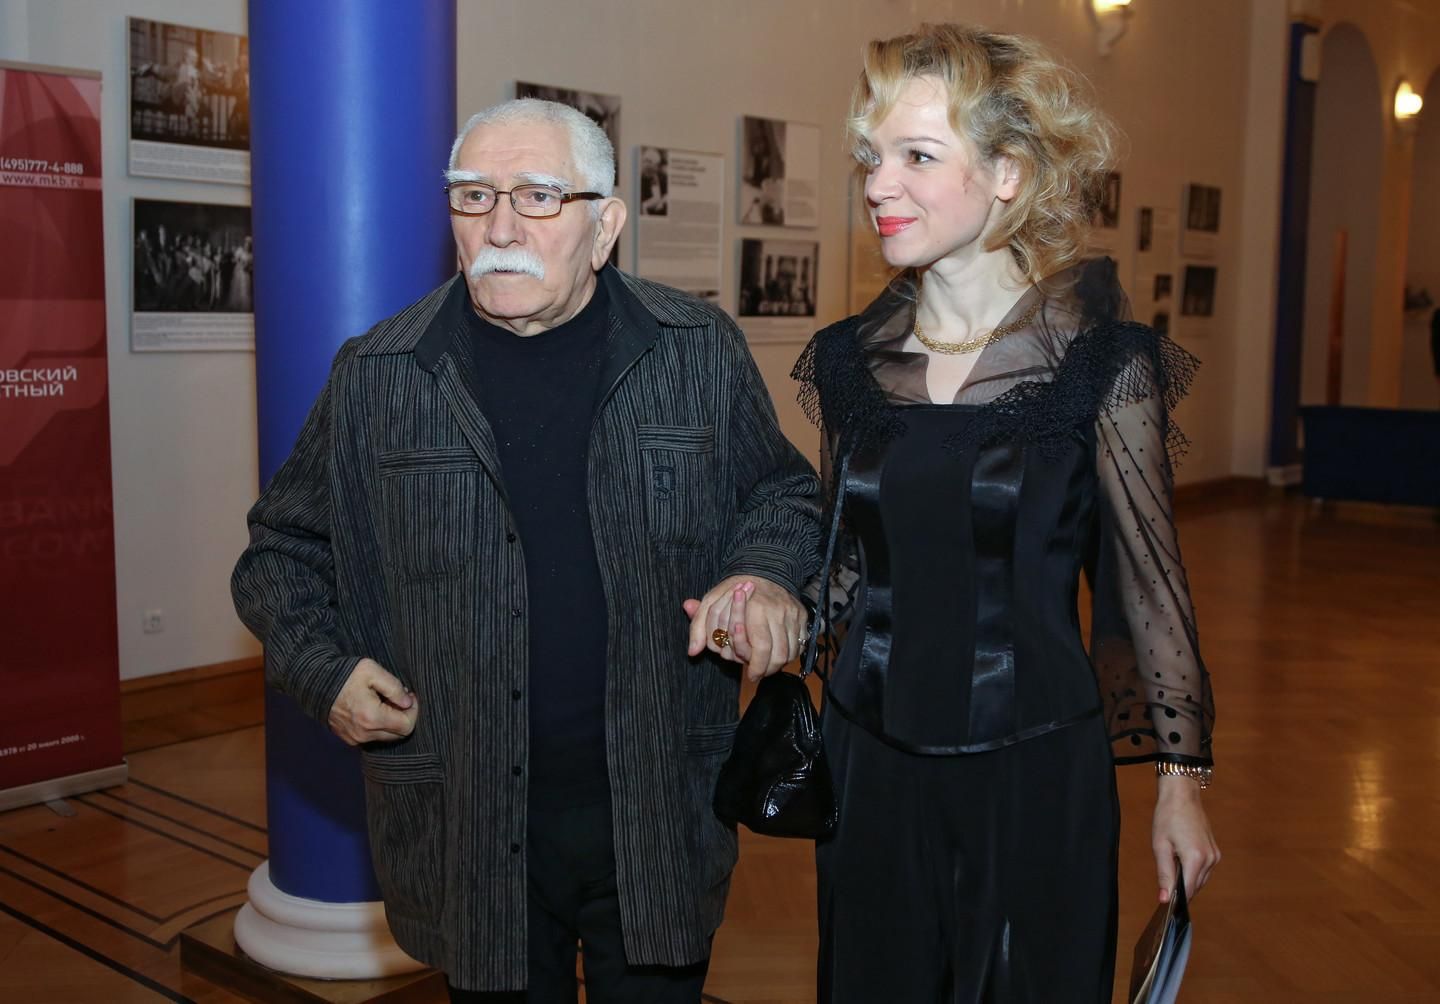 Актер Армен Джигарханян с супругой Виталиной. Фото © РИА Новости/Екатерина Чеснокова